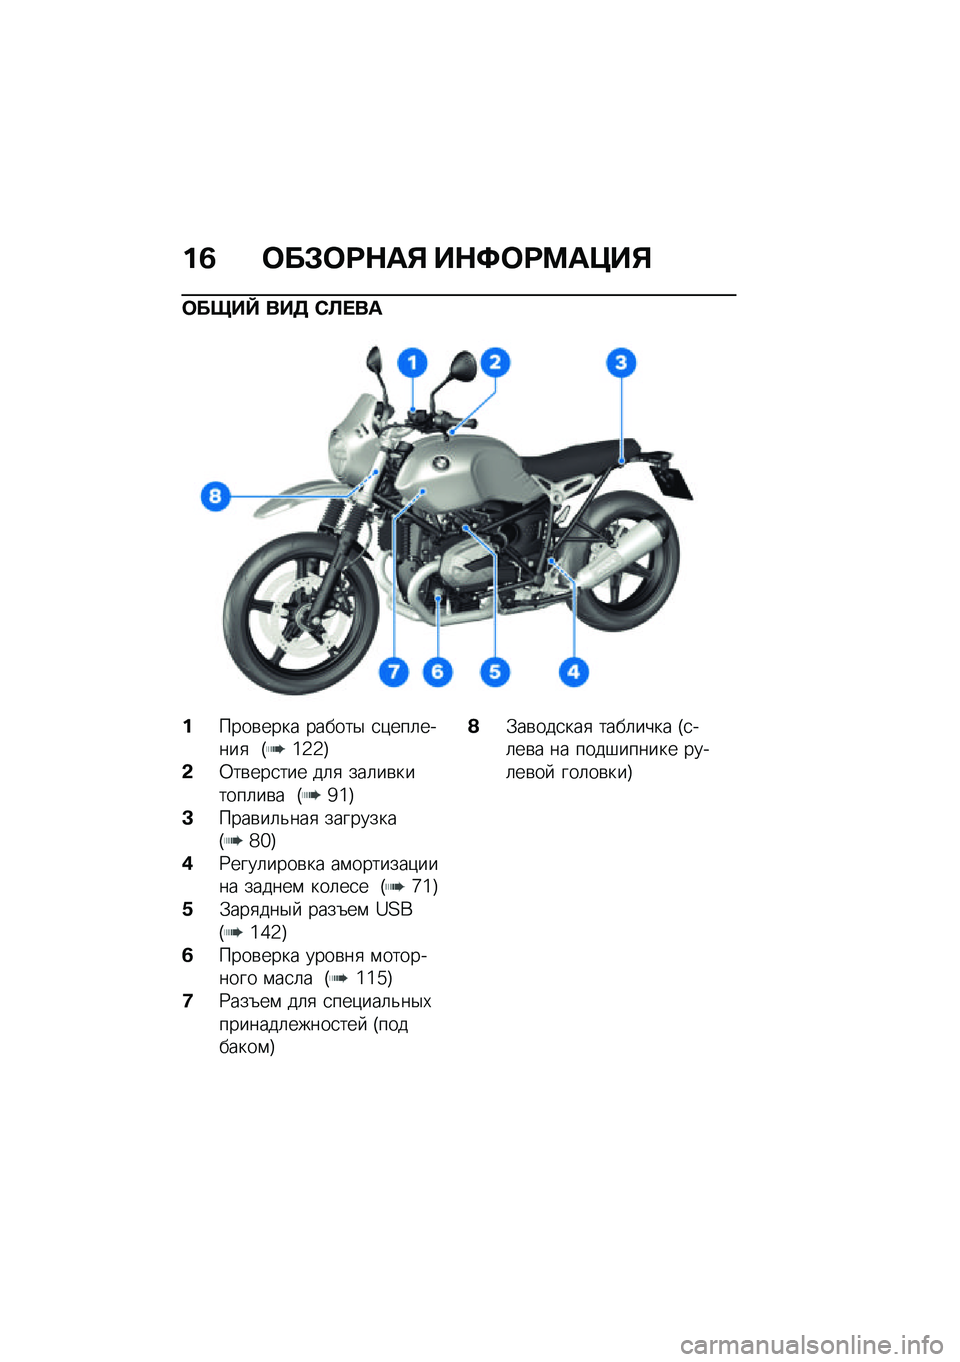 BMW MOTORRAD R NINE T URVAN G/S 2021  Руководство по эксплуатации (in Russian) ��2 �	��#�	�:�$��% ��$�;�	�:�<��=��%
�	����g ���3 �)�B� ��
�����\b���� ������$ �
�)���	�����
 �G�\�2�2�H
�&�0��\b���
��� ��	�
 ���	��\b������	��\b� �G�